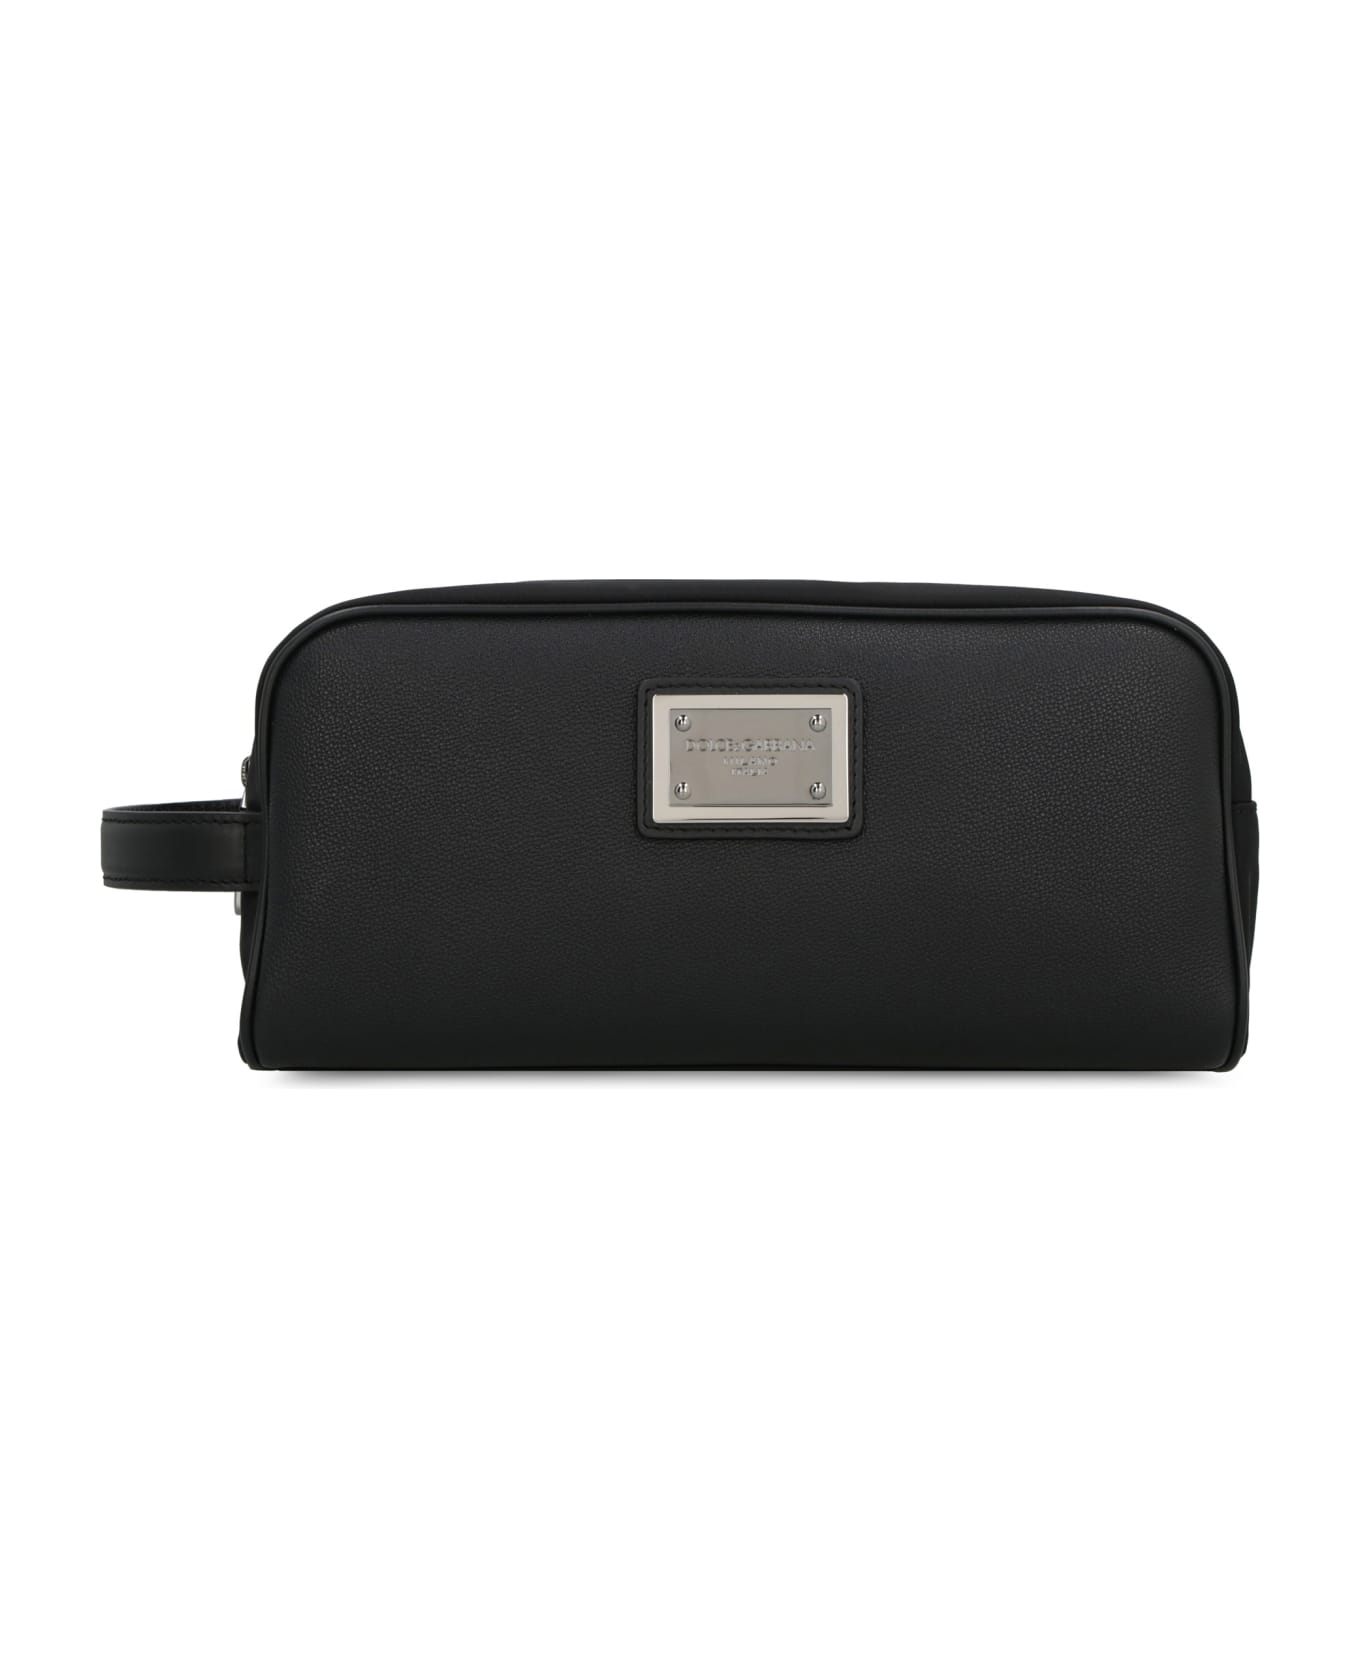 Dolce & Gabbana Nylon Wash Bag - black